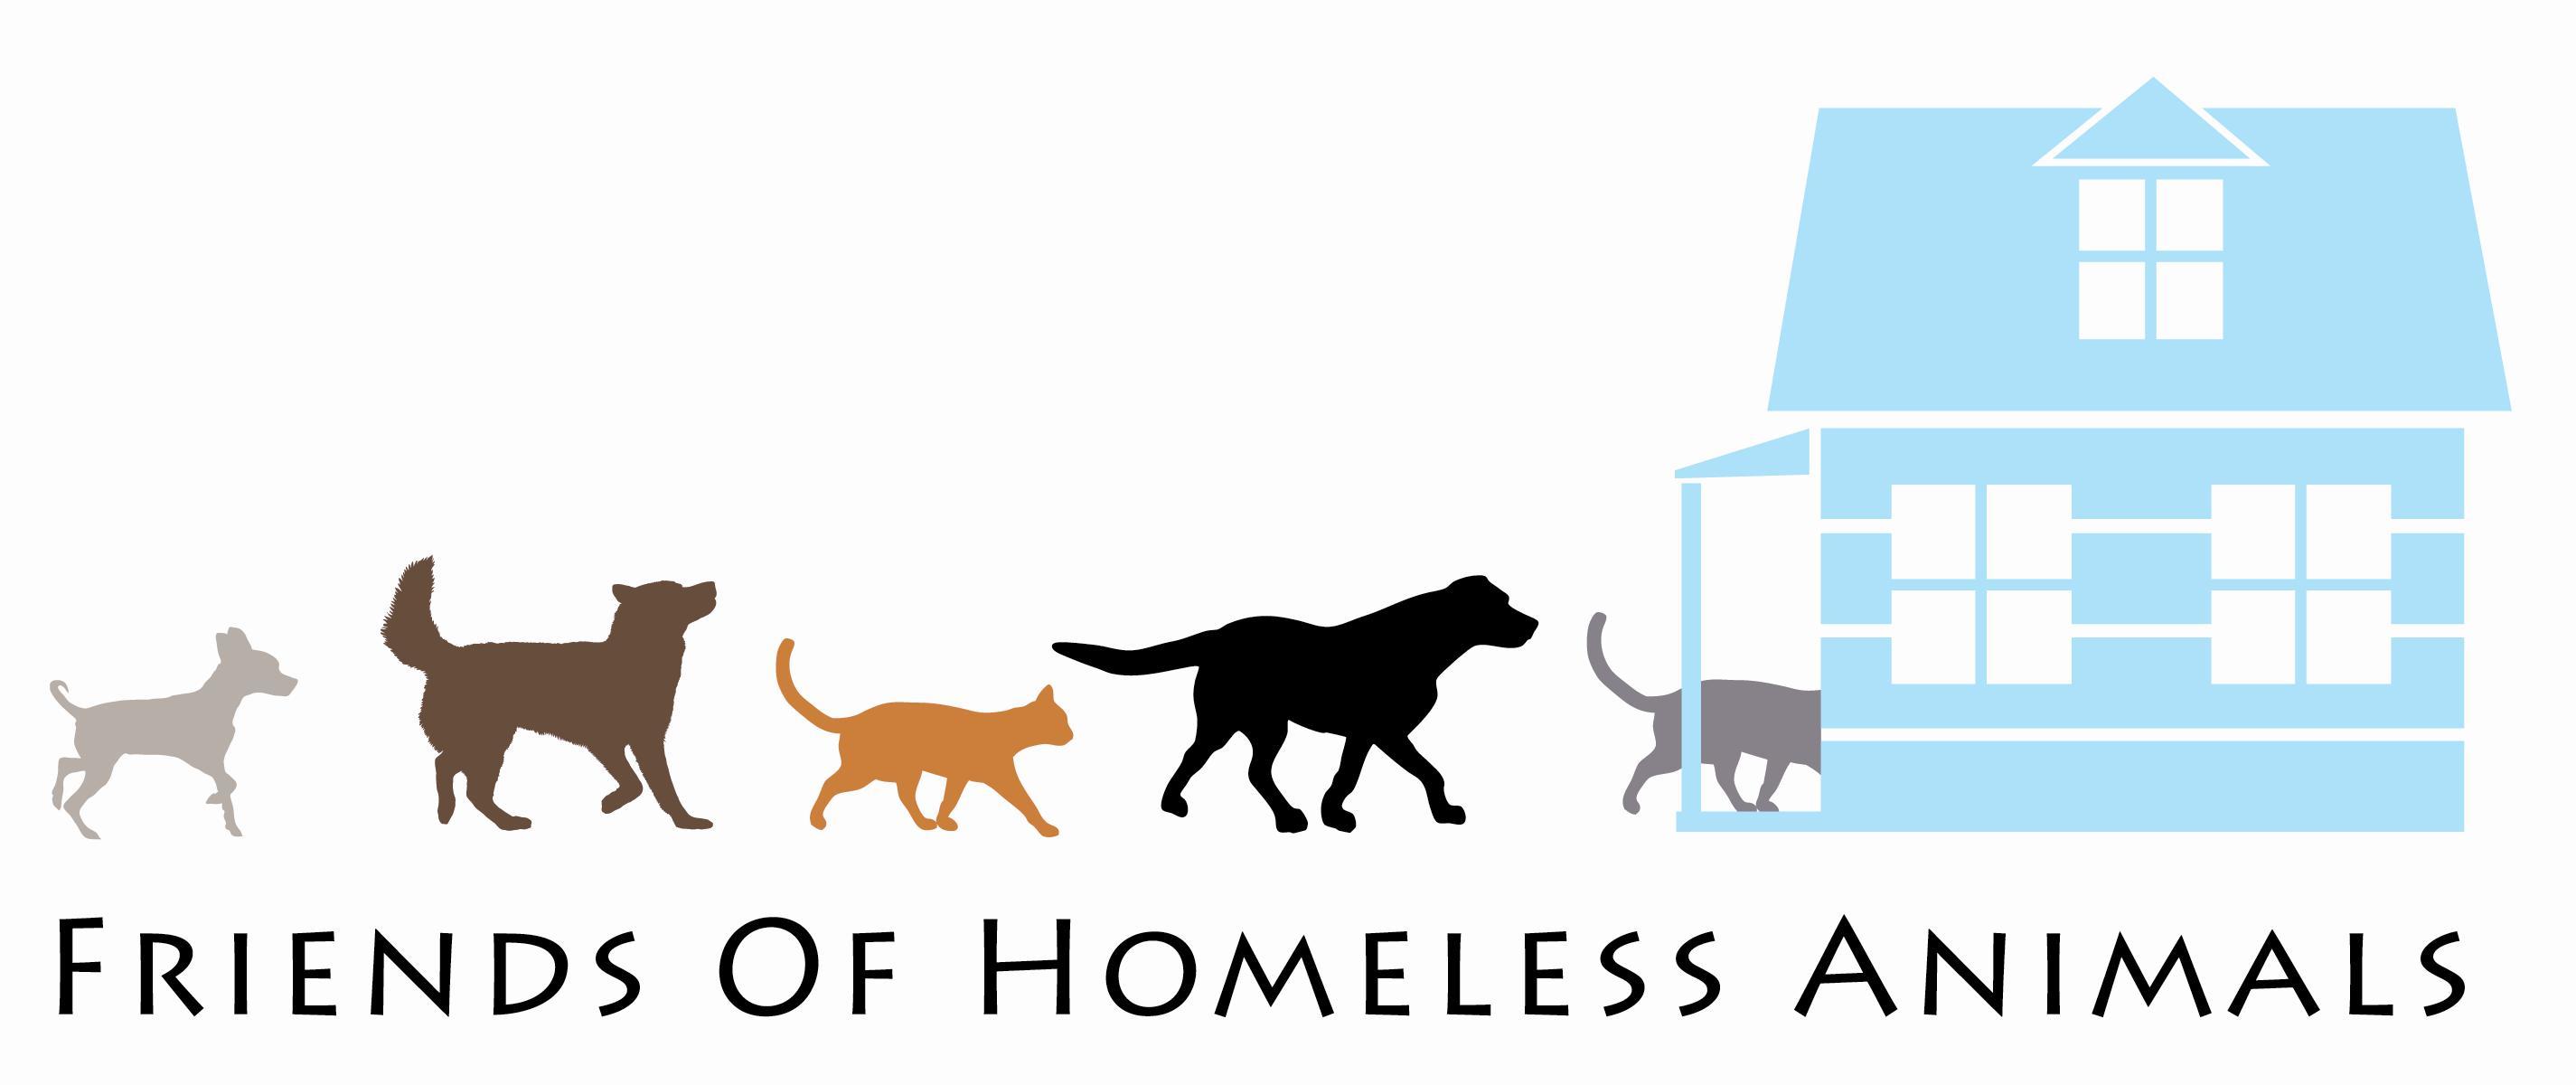 Donate animals. Приют для животных лого. Логотип приюта. Эмблема приюта для животных. Приют для кошек лого.